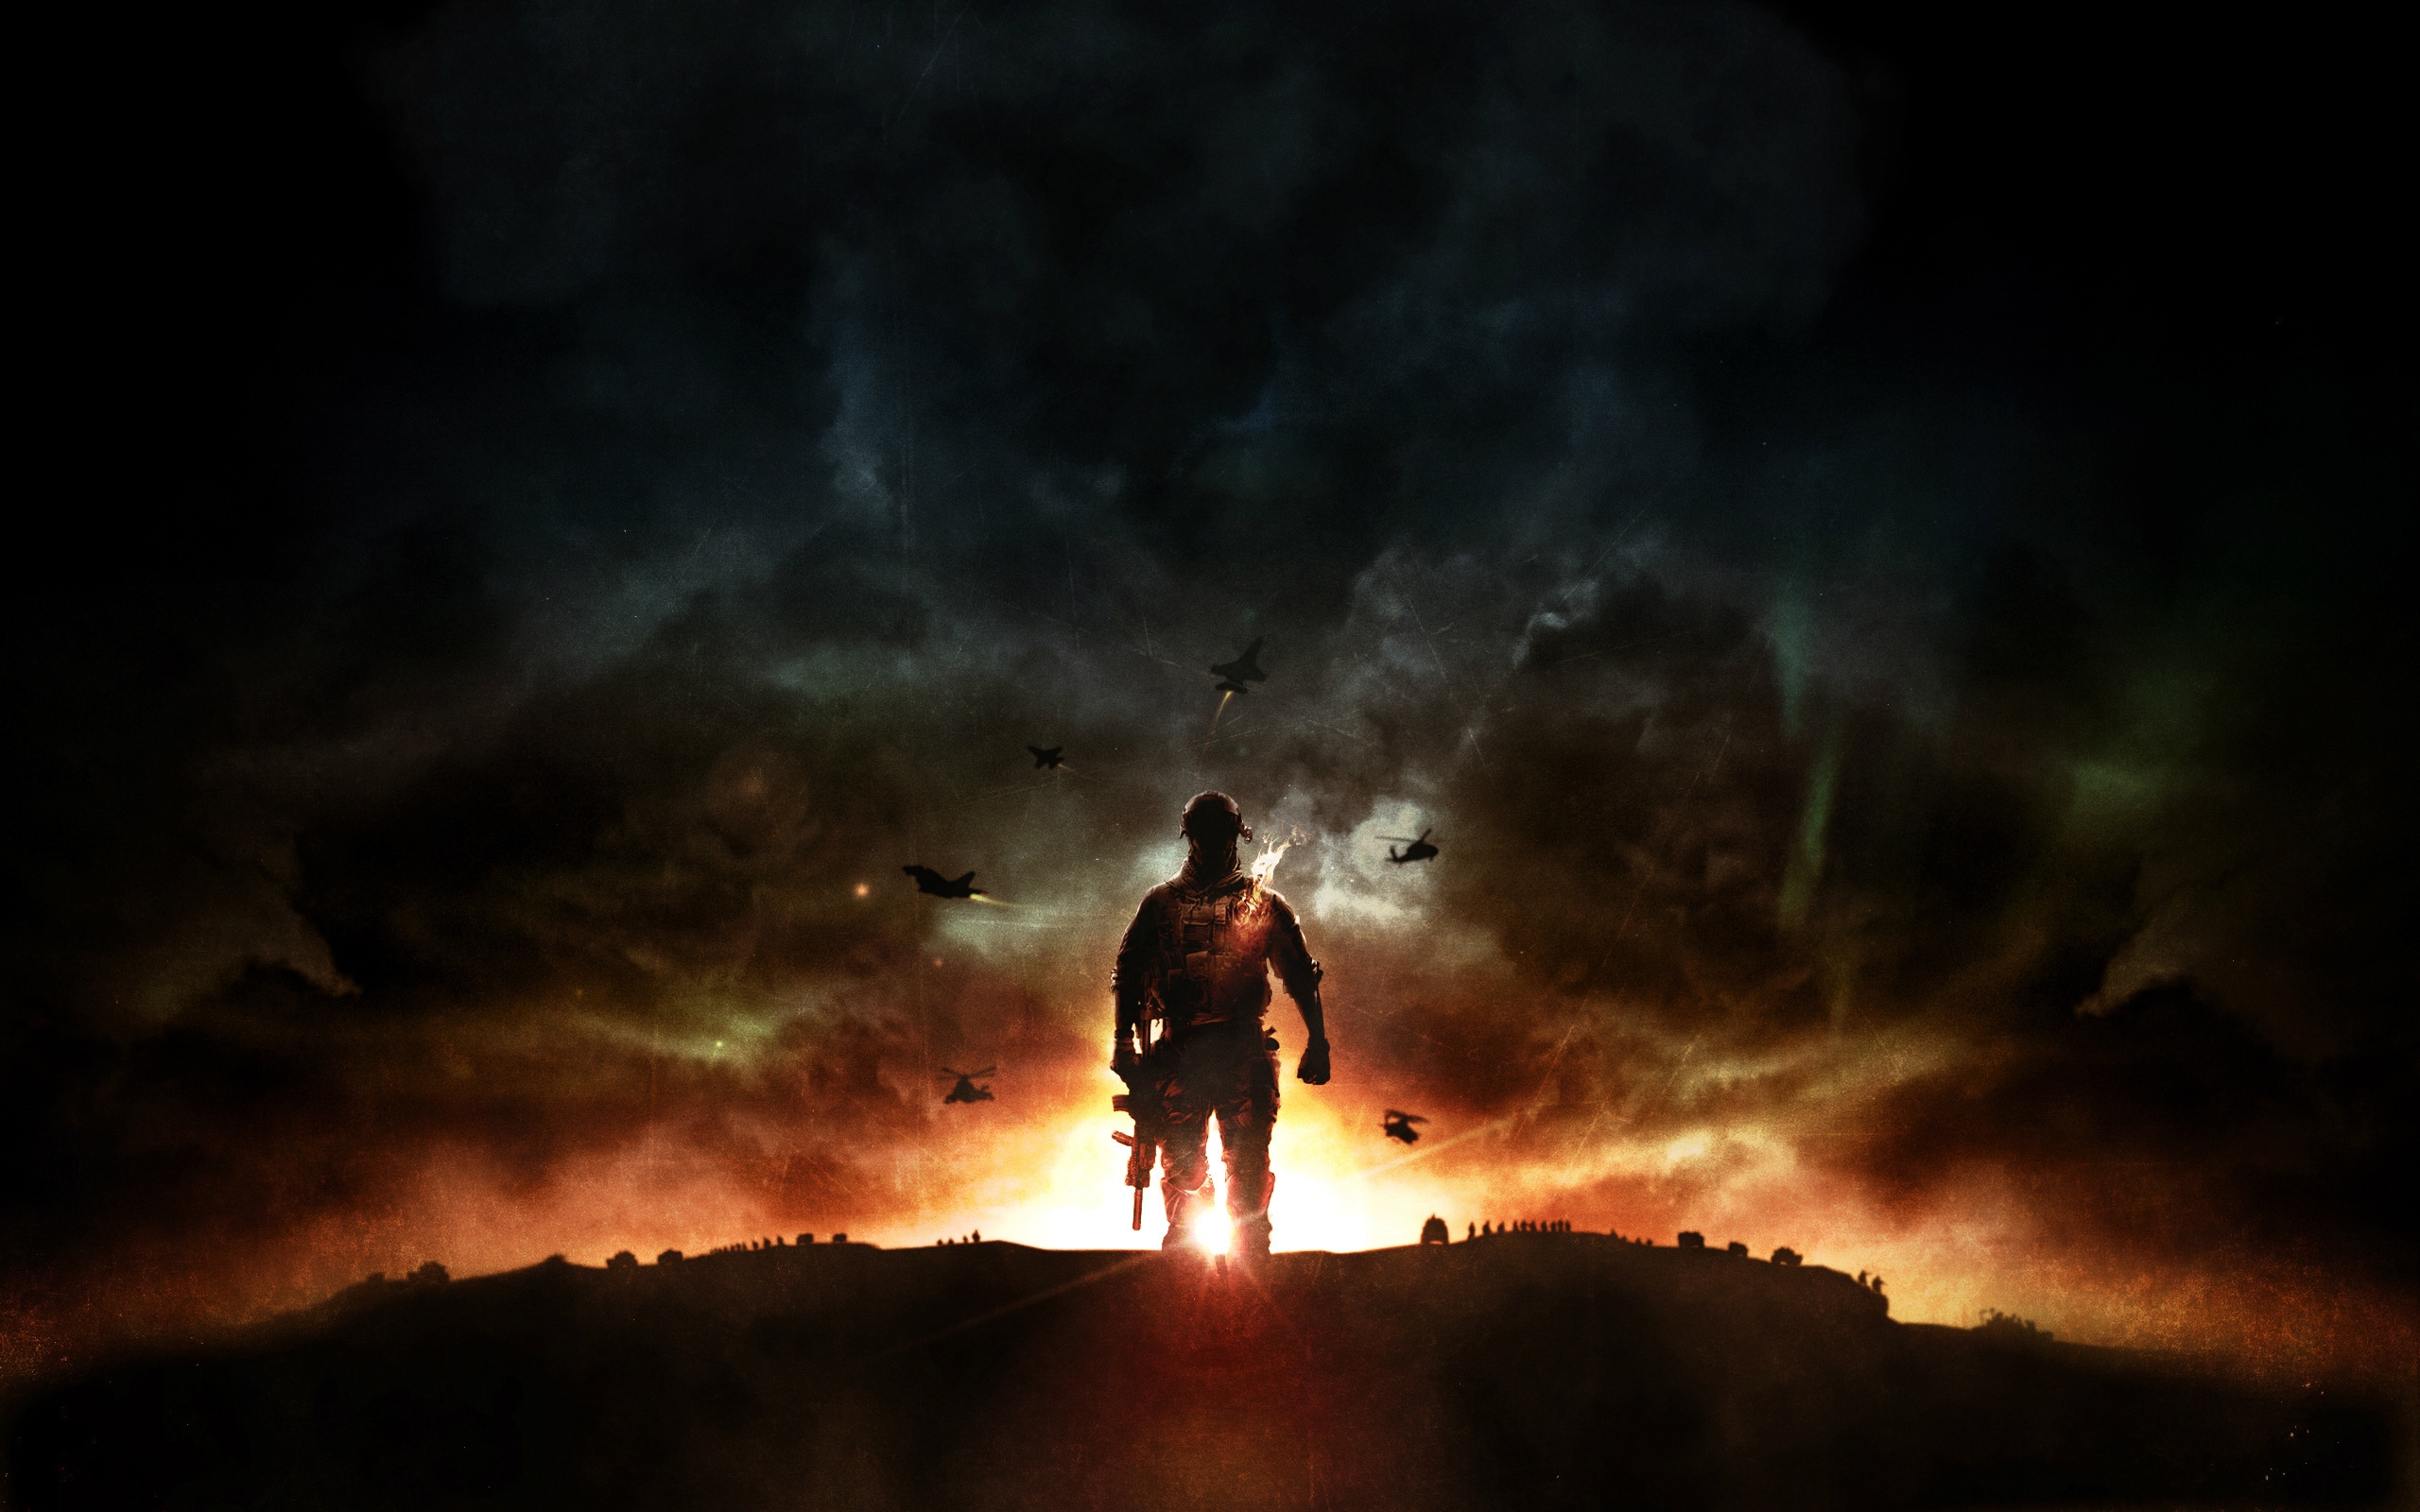 Battlefield 4 Sunset War for 2560 x 1600 widescreen resolution